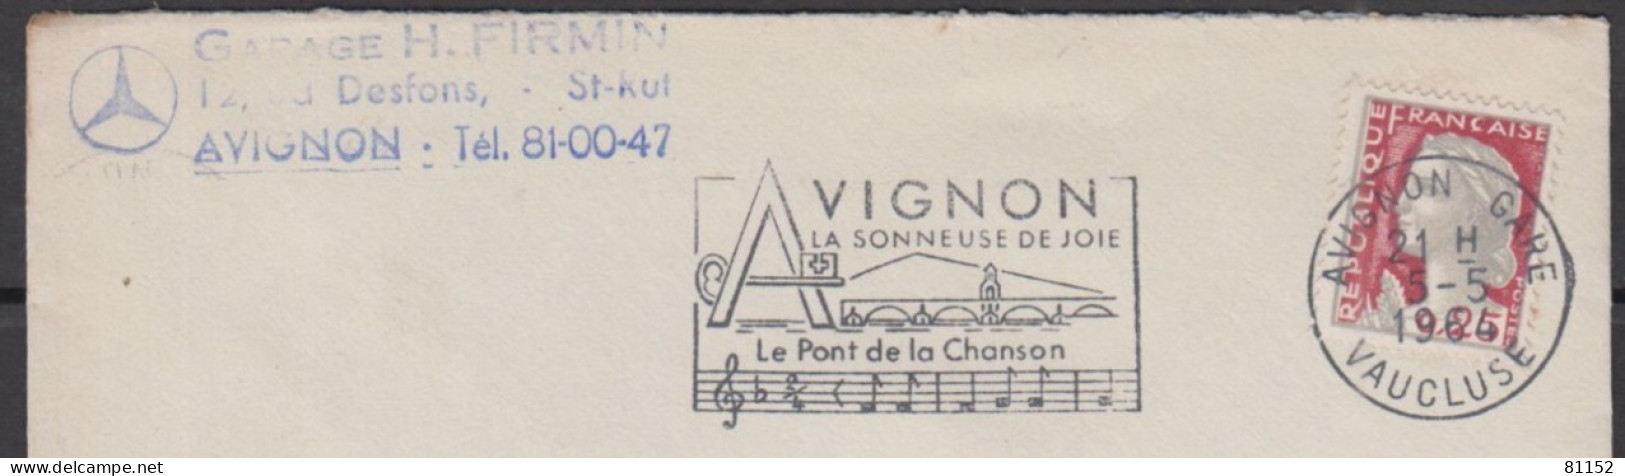 Mne De DECARIS 25c  + Sécap   Sur Lettre Pub " Blason MERCEDES " De  AVIGNON  Le 5 5 1964  Pour AVIGNON - 1960 Marianne (Decaris)